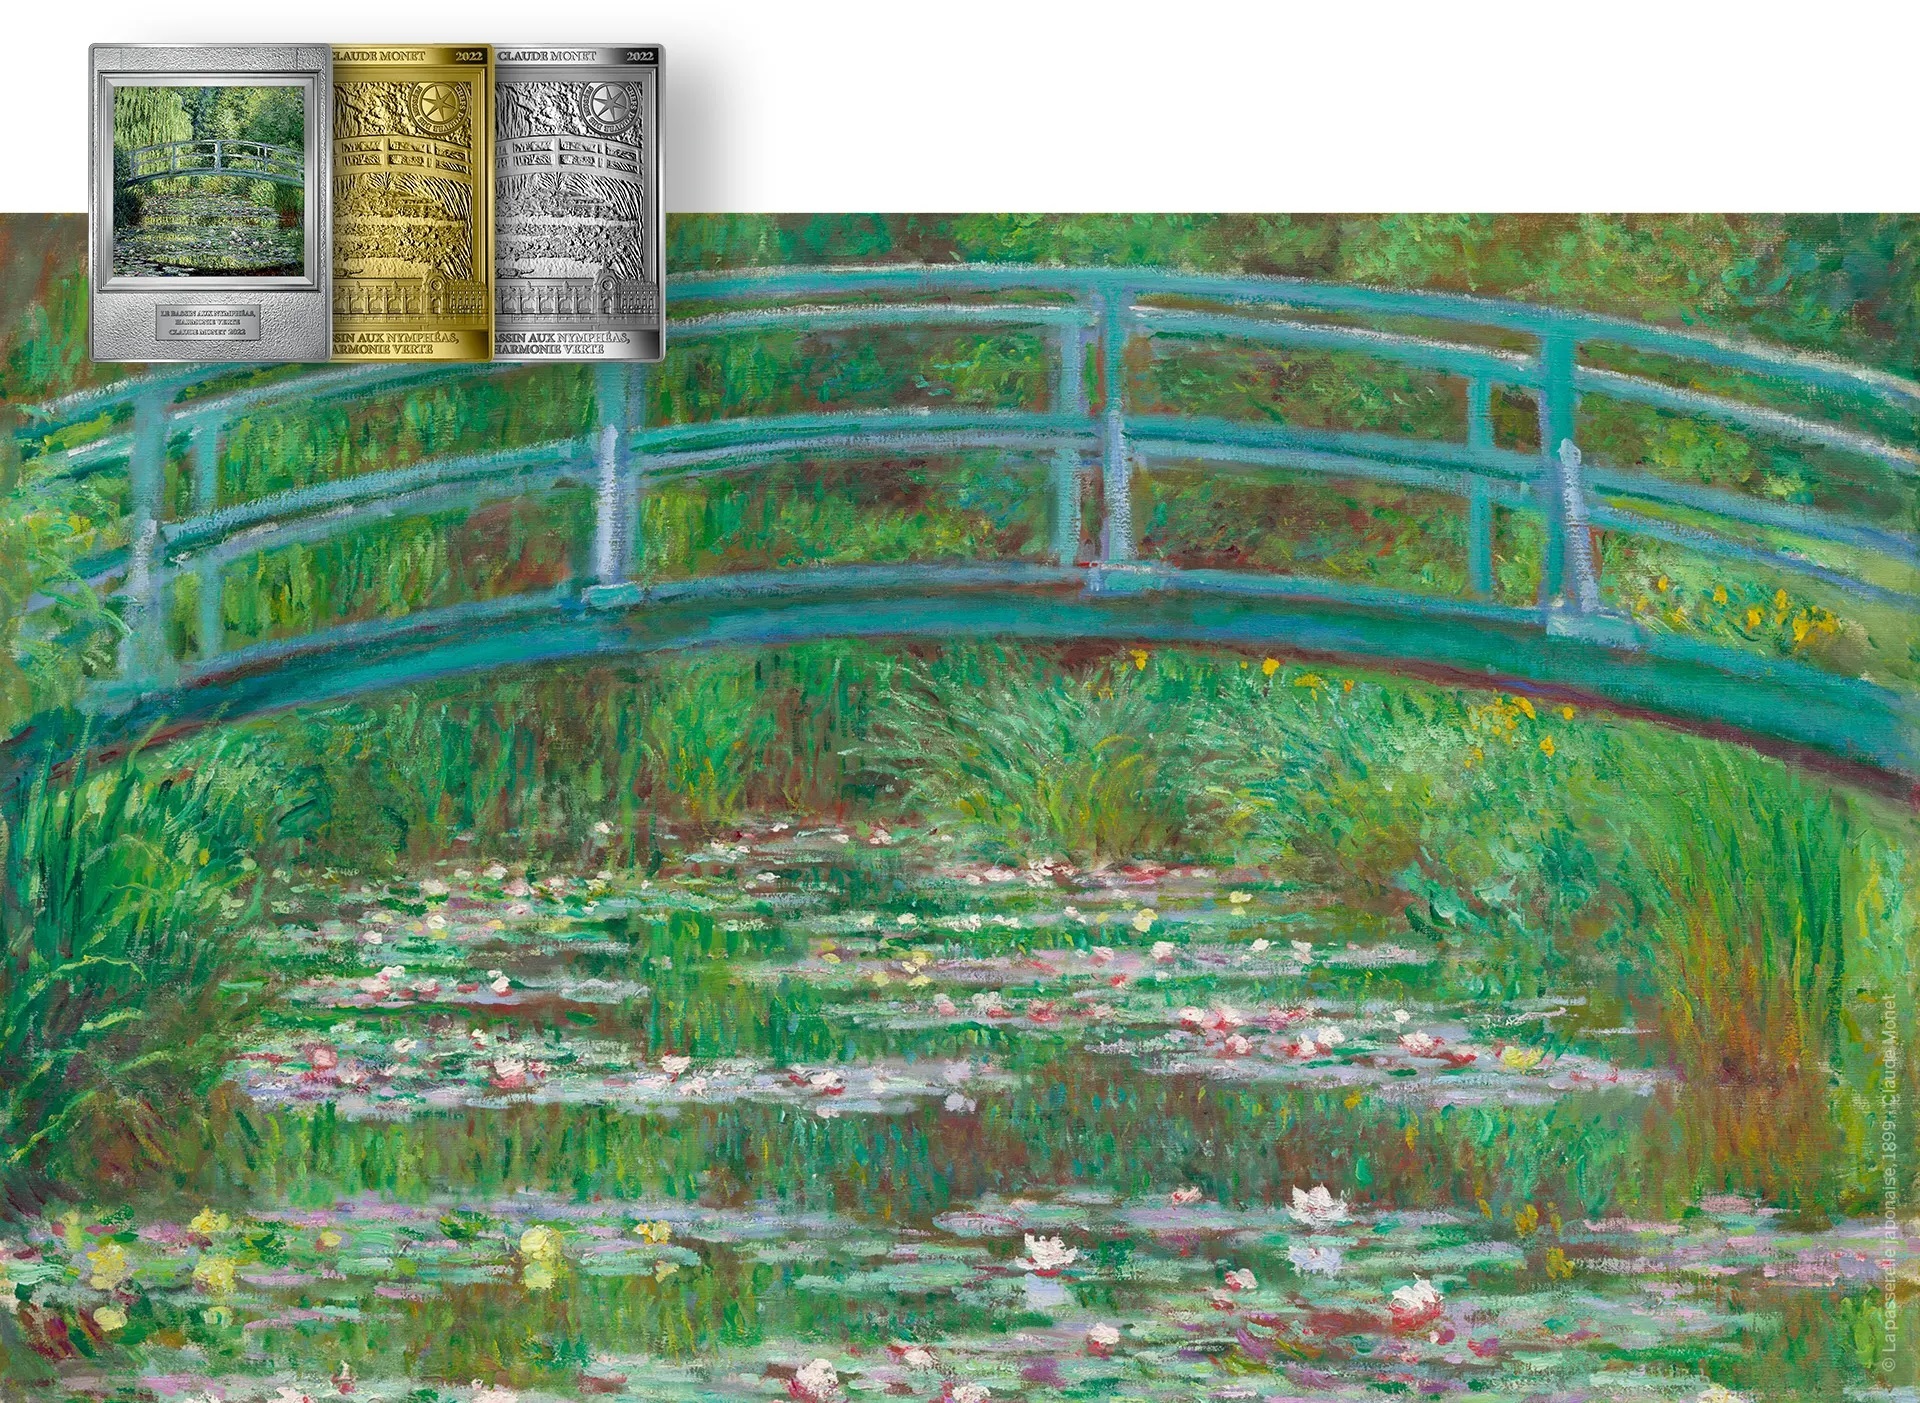 Monnaie de Paris The Lily Pond, Green Harmony, by Claude Monet (shop illustration) (zoom)